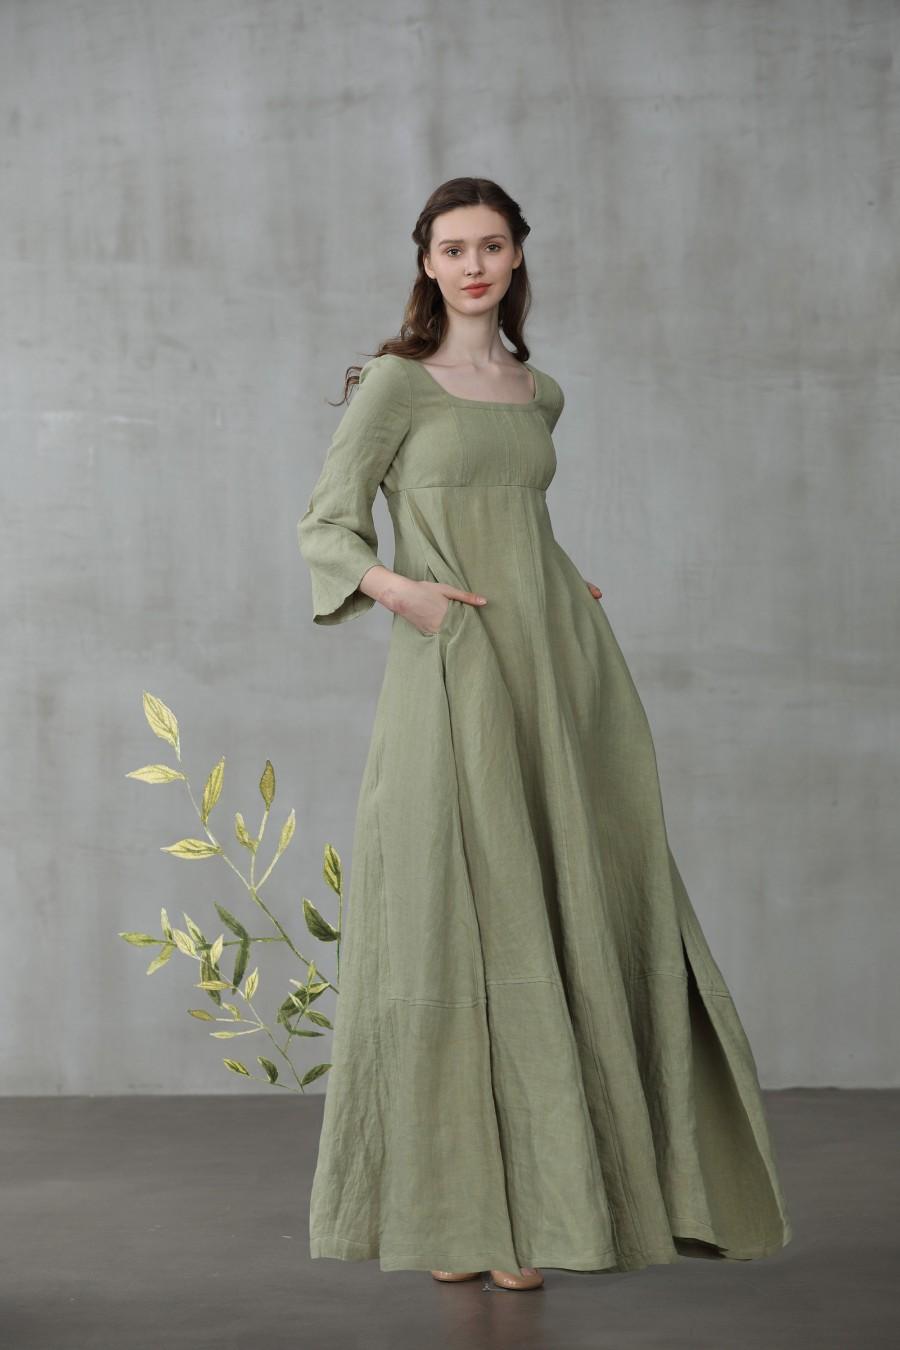 Mariage - Medieval dress, linen dress, maxi linen dress, puff sleeve dress, wedding dress, green dress, princess dress, Renaissance dress